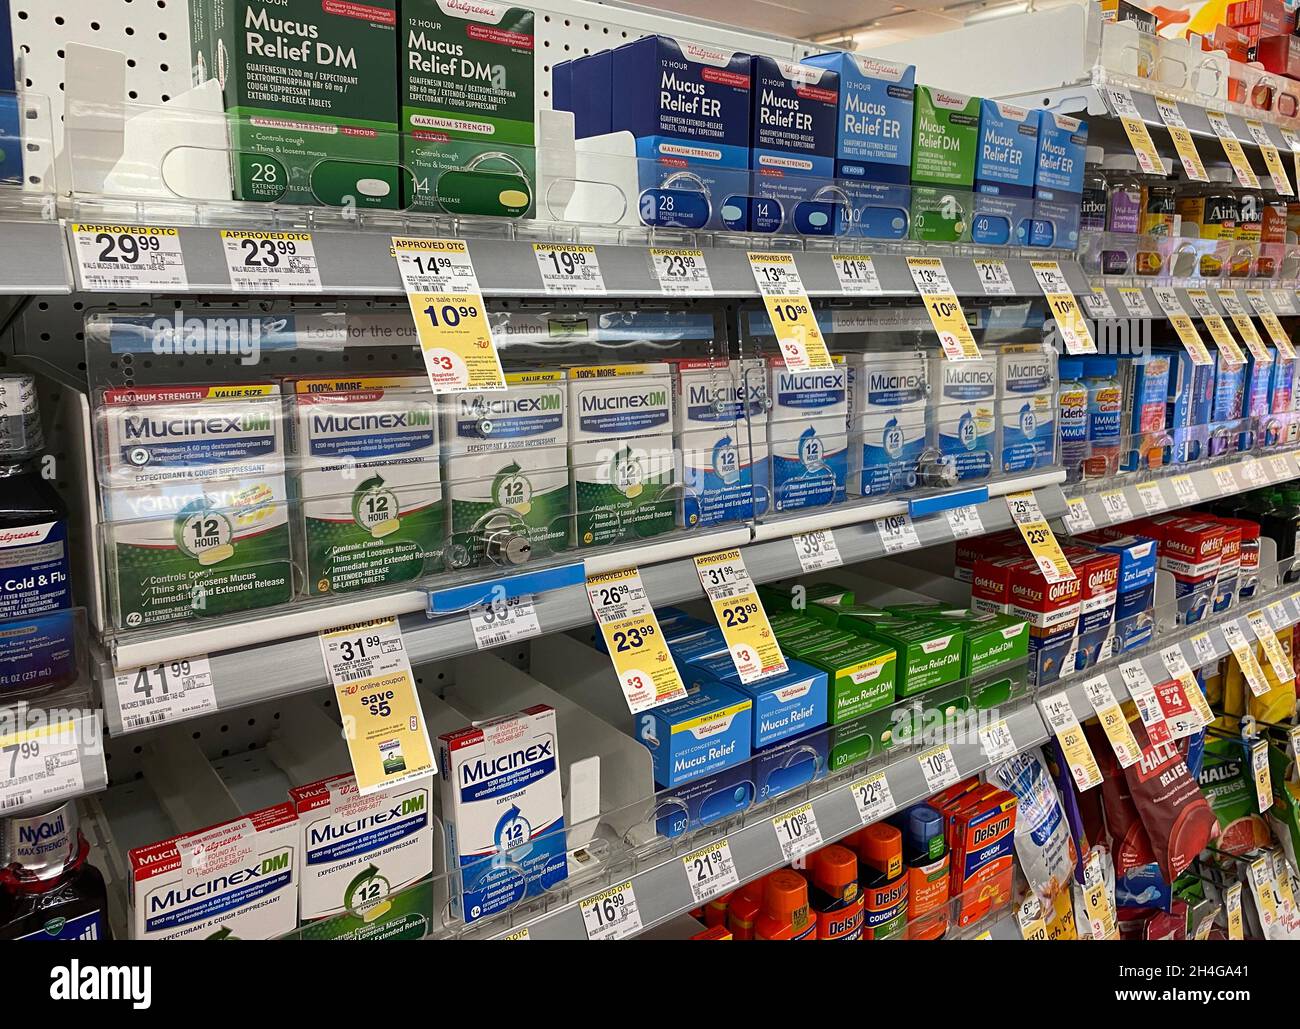 Kälte-, Nasennebenhöhlen- und Allergiemedizin im Regal der Walgreens Drogerie. Stockfoto